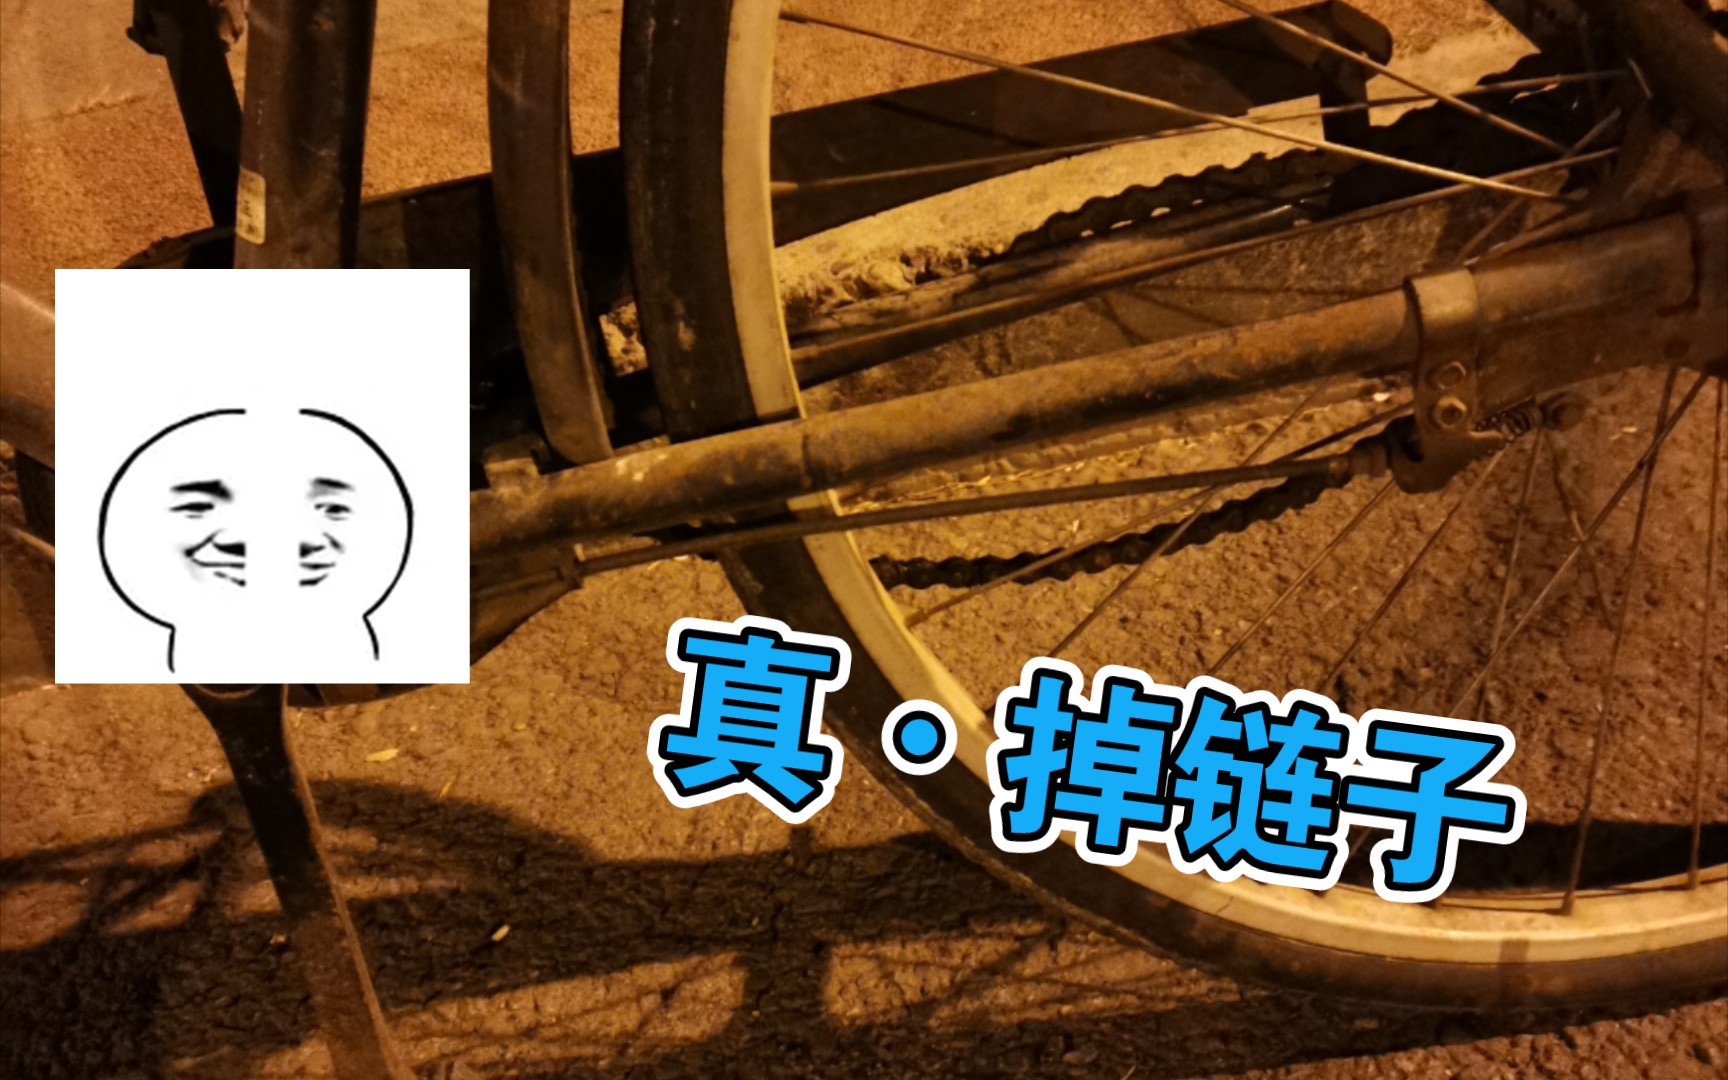 【社死】自行车链子掉了不会安!滑行回家!